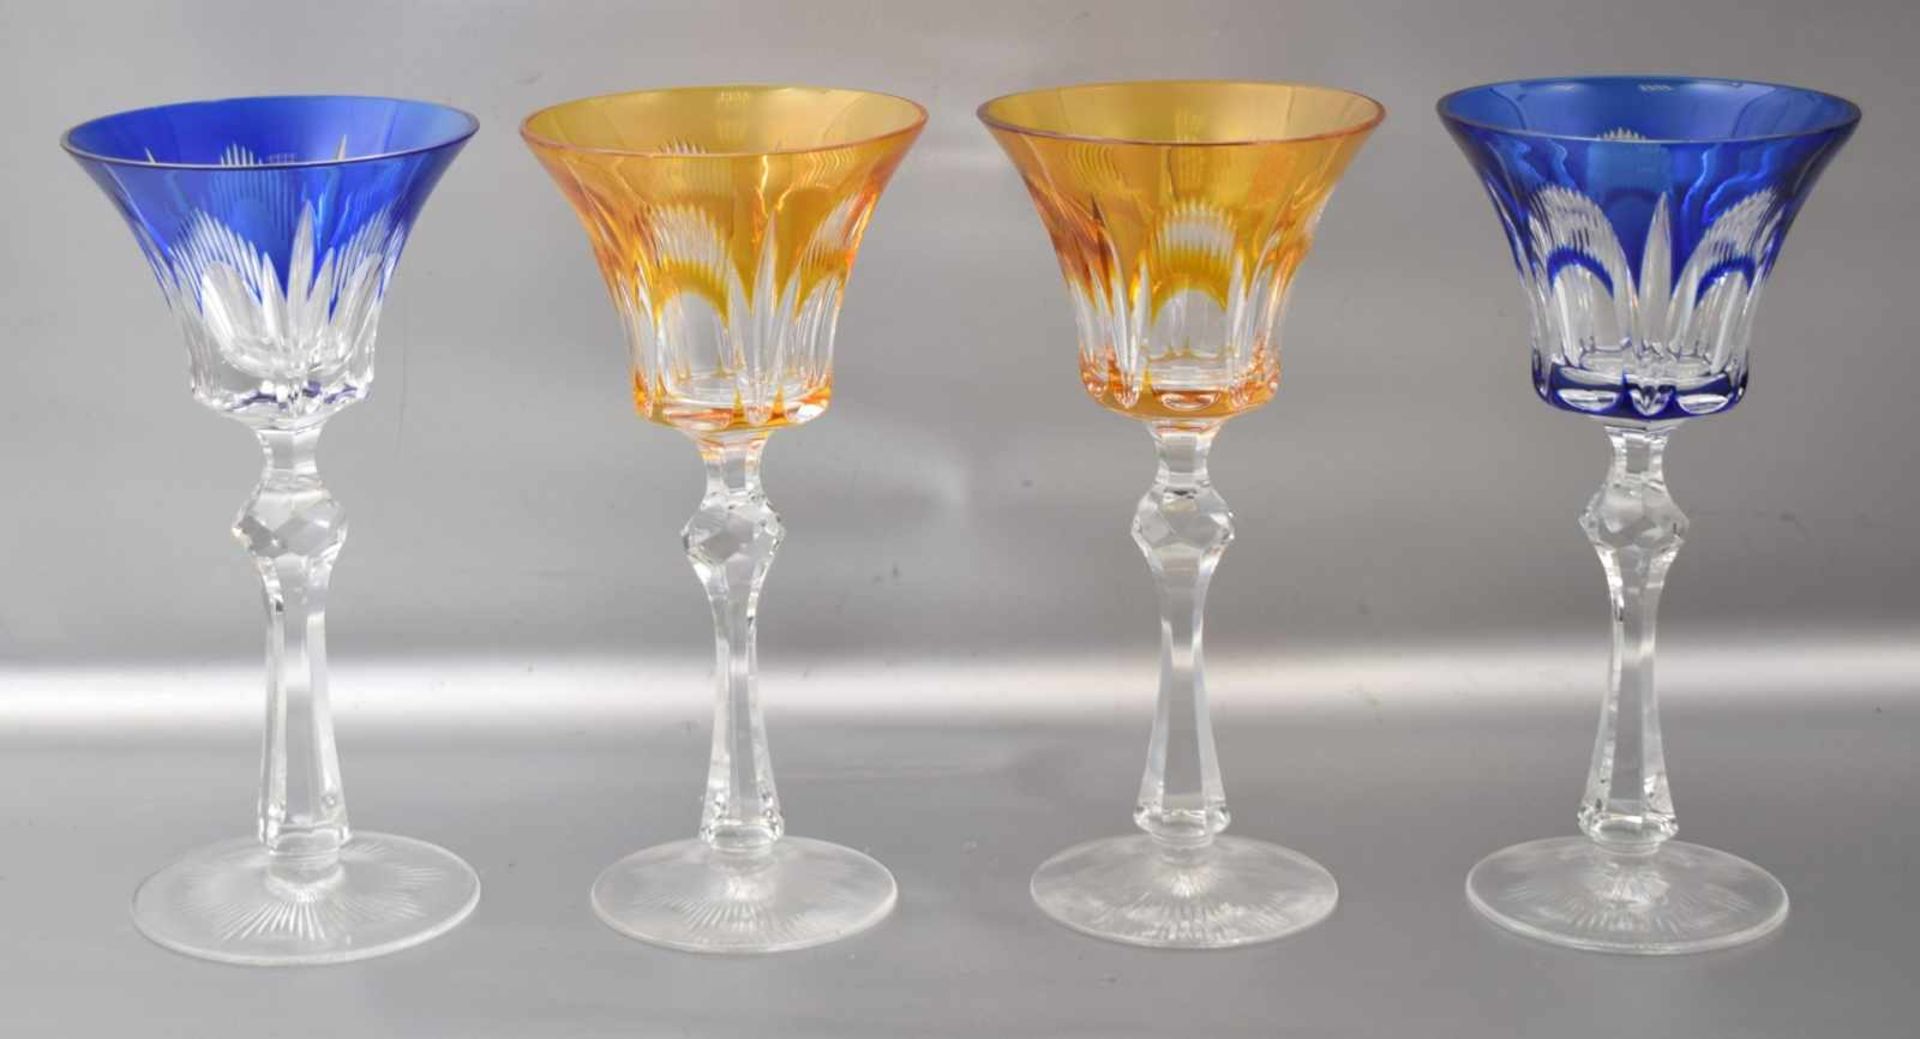 Vier Weingläser farbl. Kristallglas, geschliffen verziert, mit blauem bzw. bernsteinfarbenem